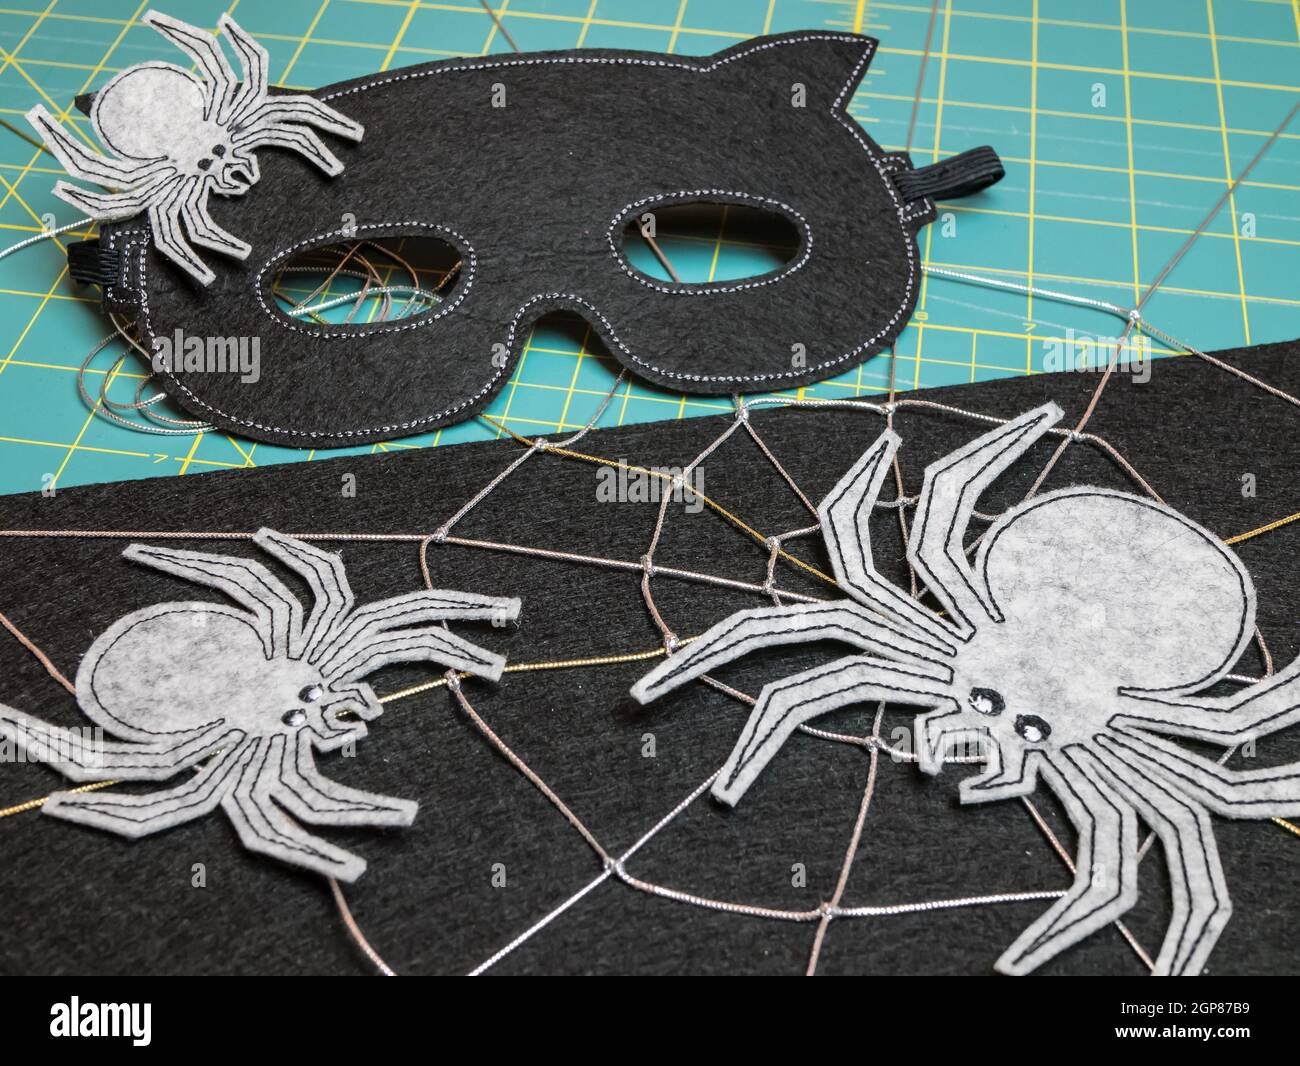 Masque et araignées de feutre comme la décoration pour le festival d' Halloween. Masque noir pour déguisement Photo Stock - Alamy